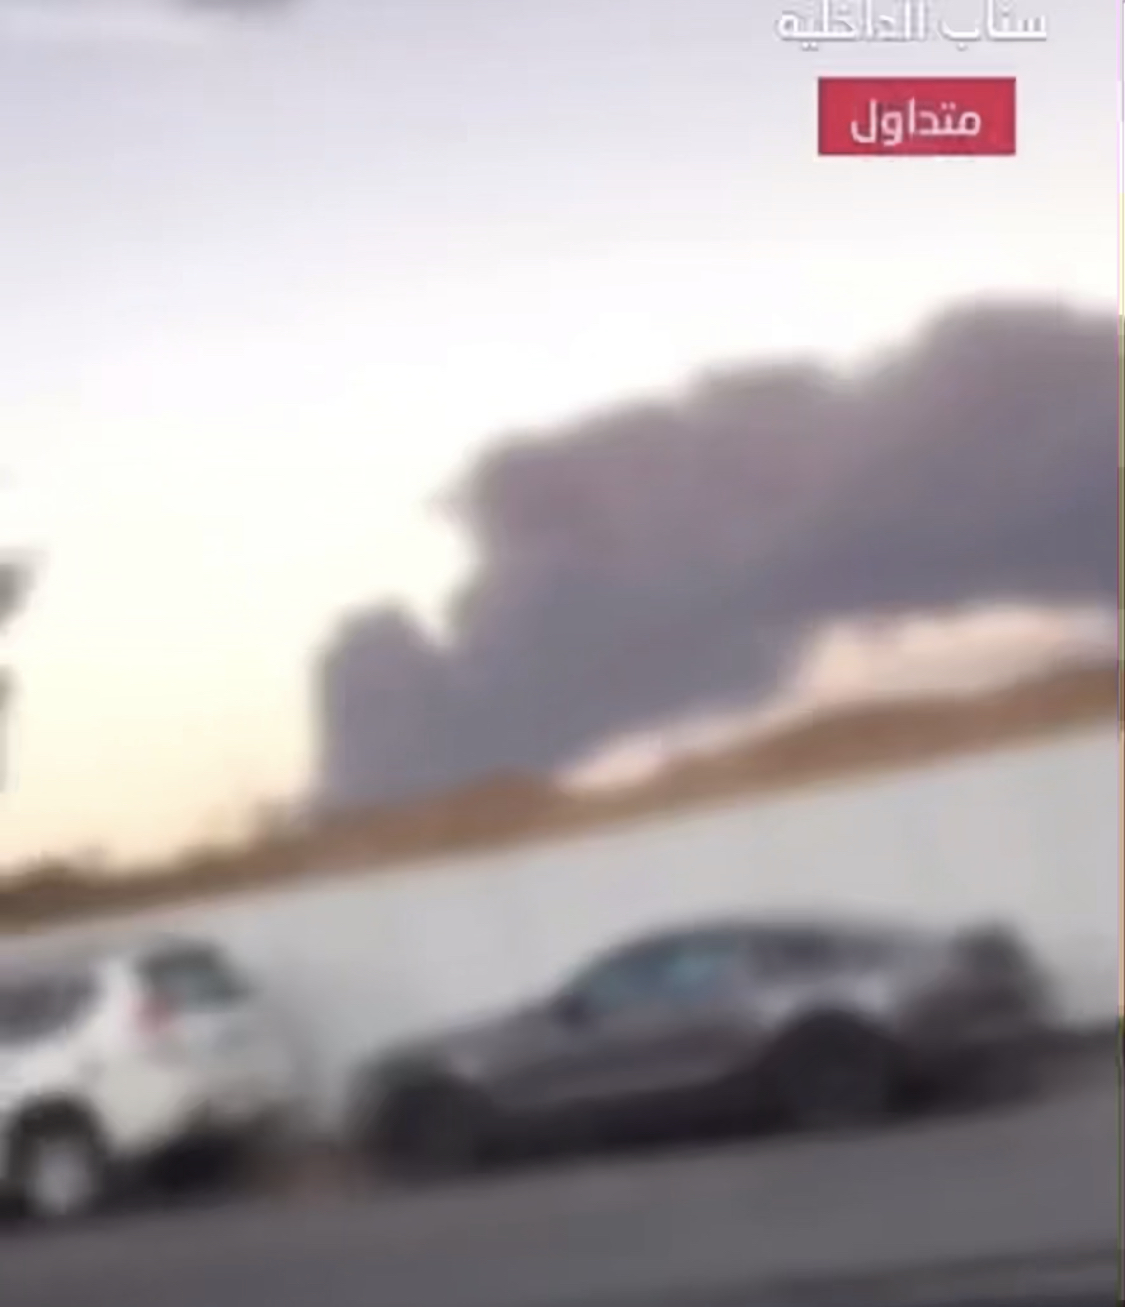 بالفيديو.. ضبط يمني نشر مقاطع تمجد الاعتداءات الإرهابية على أرامكو